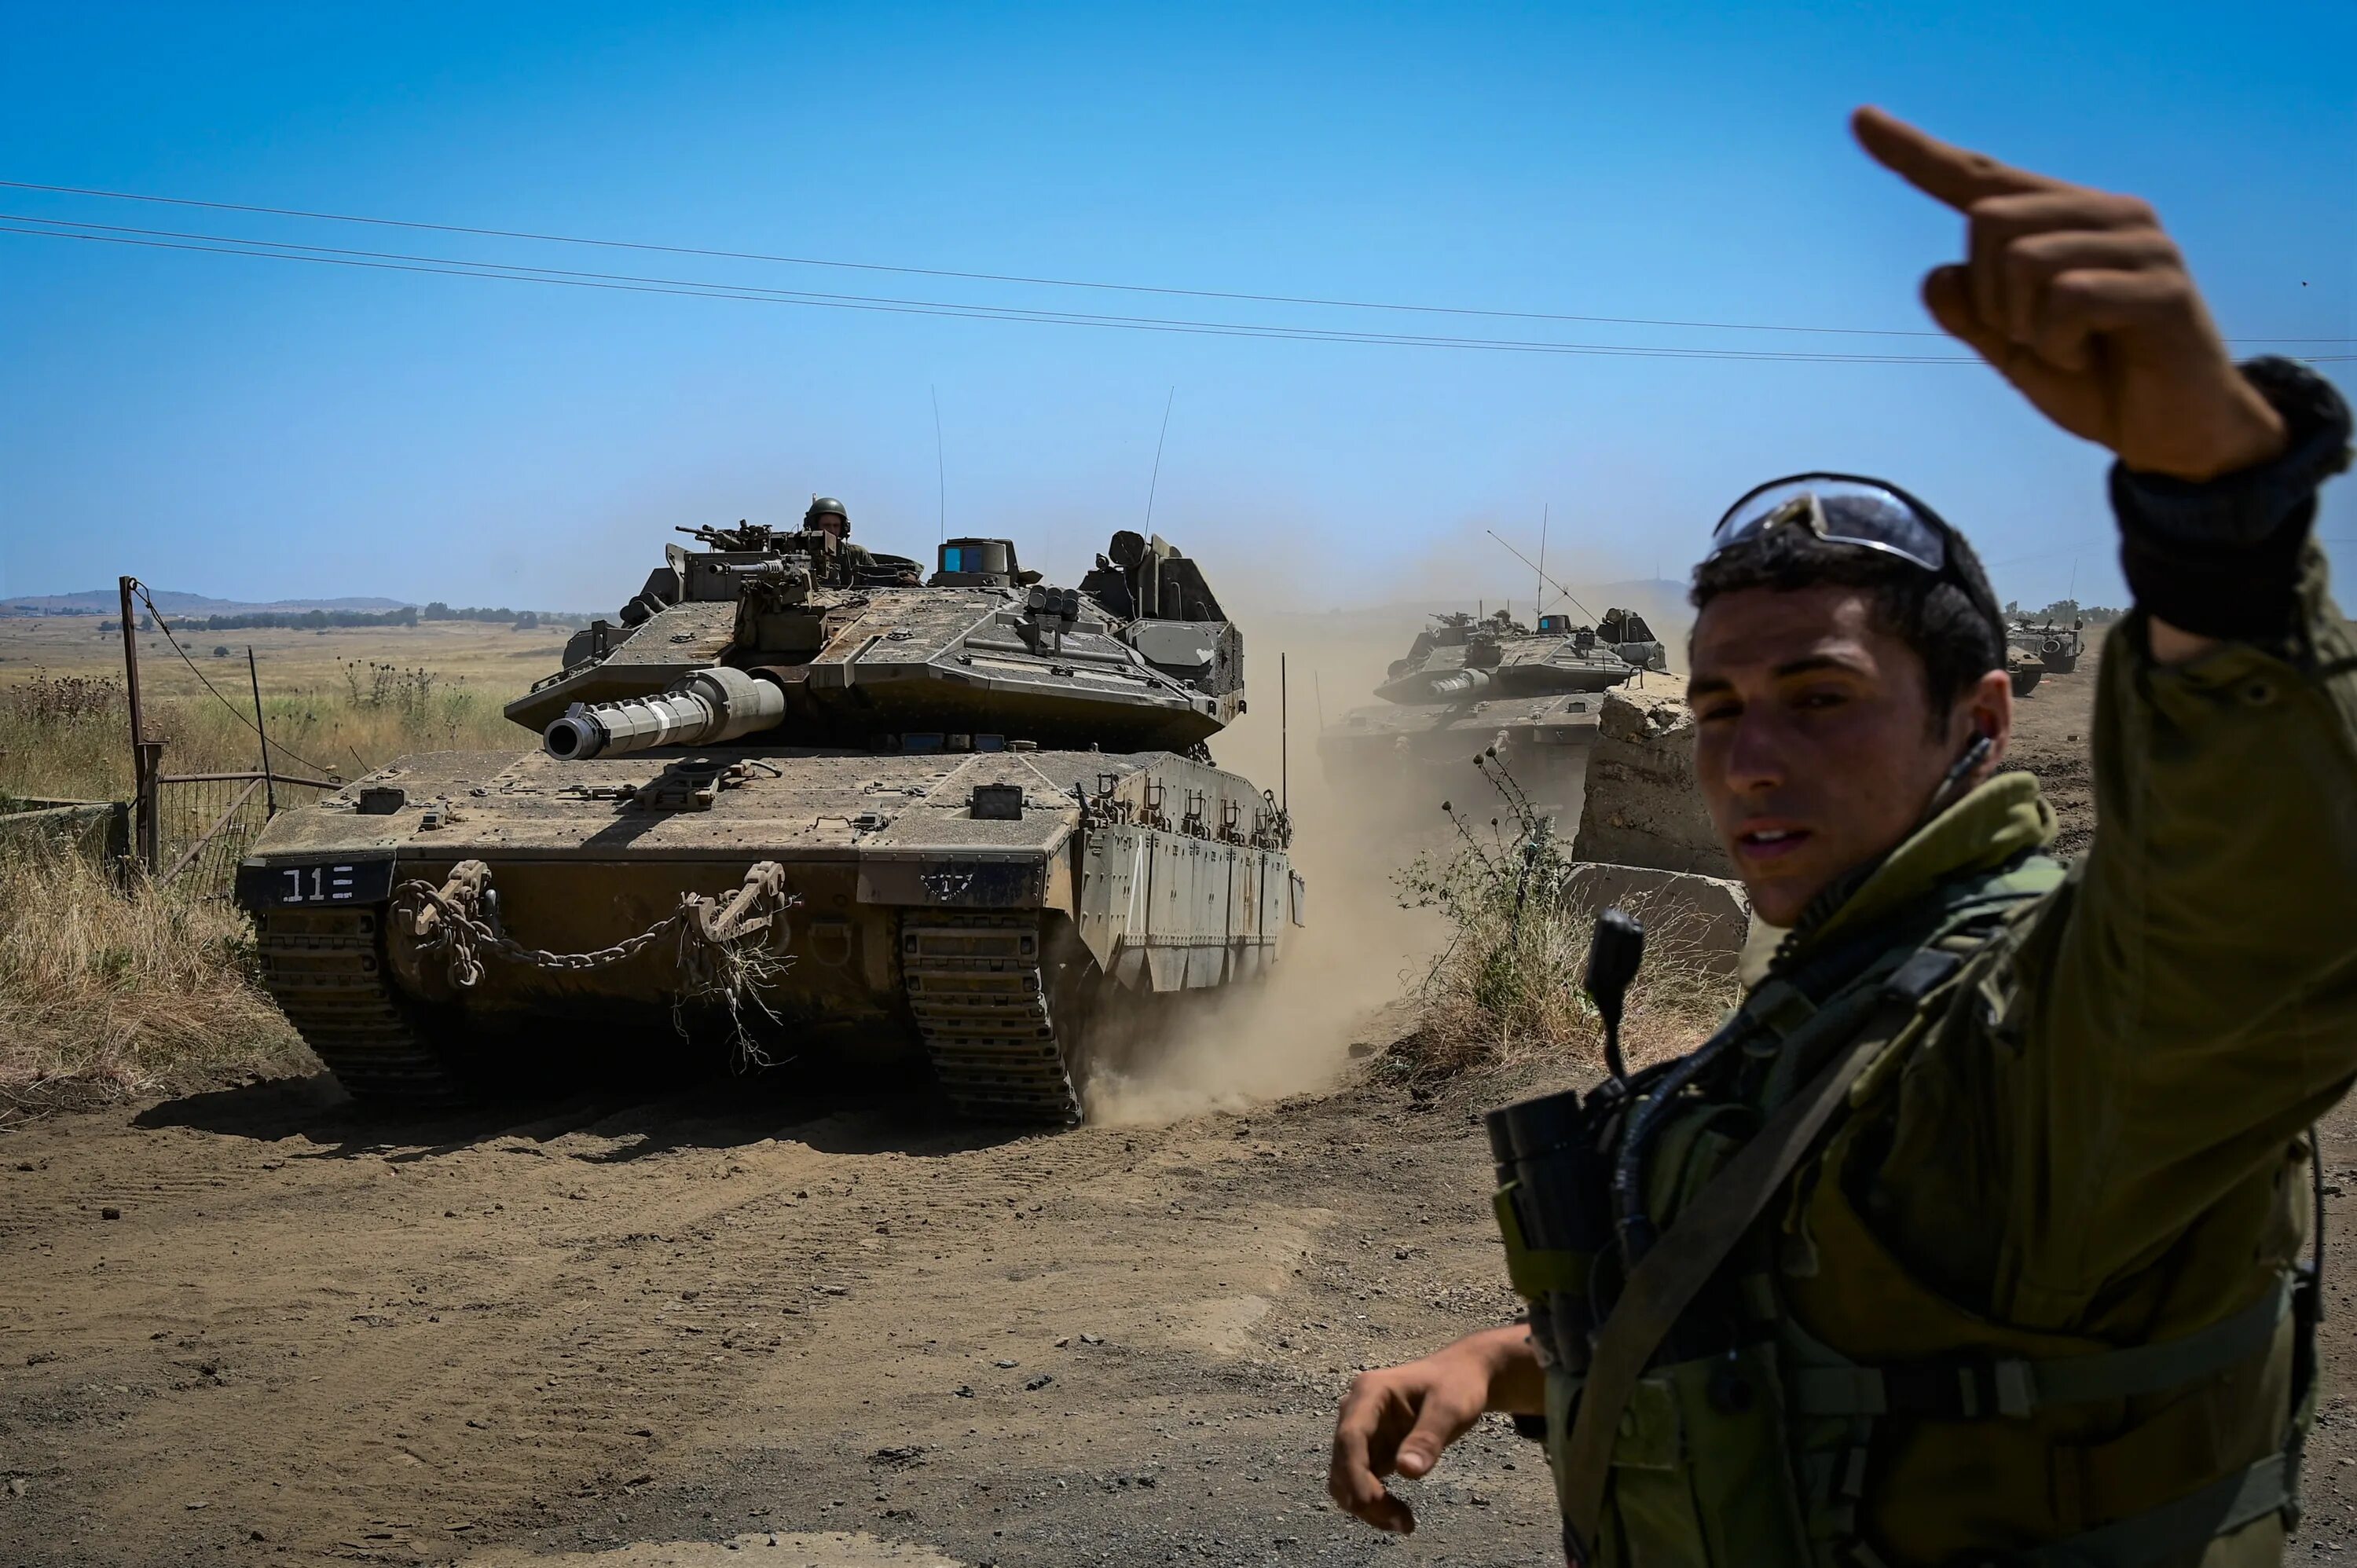 Военная техника Израиля. Военная техника Израиля в Палестине. Военная мощь Палестины. Израильские танки вторжения в Палестину. Военная мощь израиля